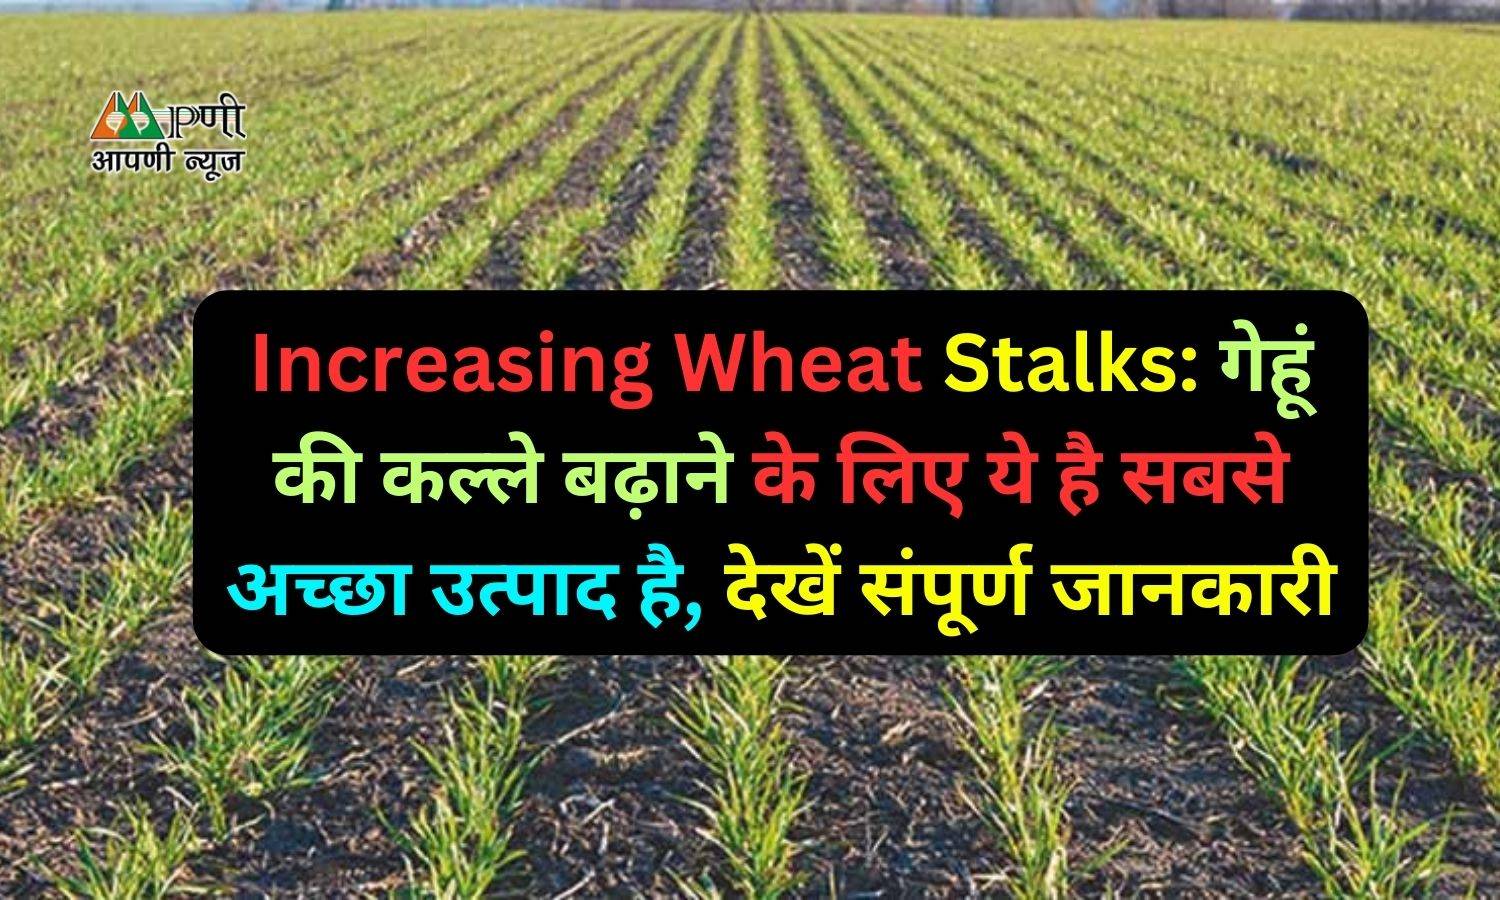 Increasing Wheat Stalks: गेहूं की कल्ले बढ़ाने के लिए ये है सबसे अच्छा उत्पाद है, देखें संपूर्ण जानकारी